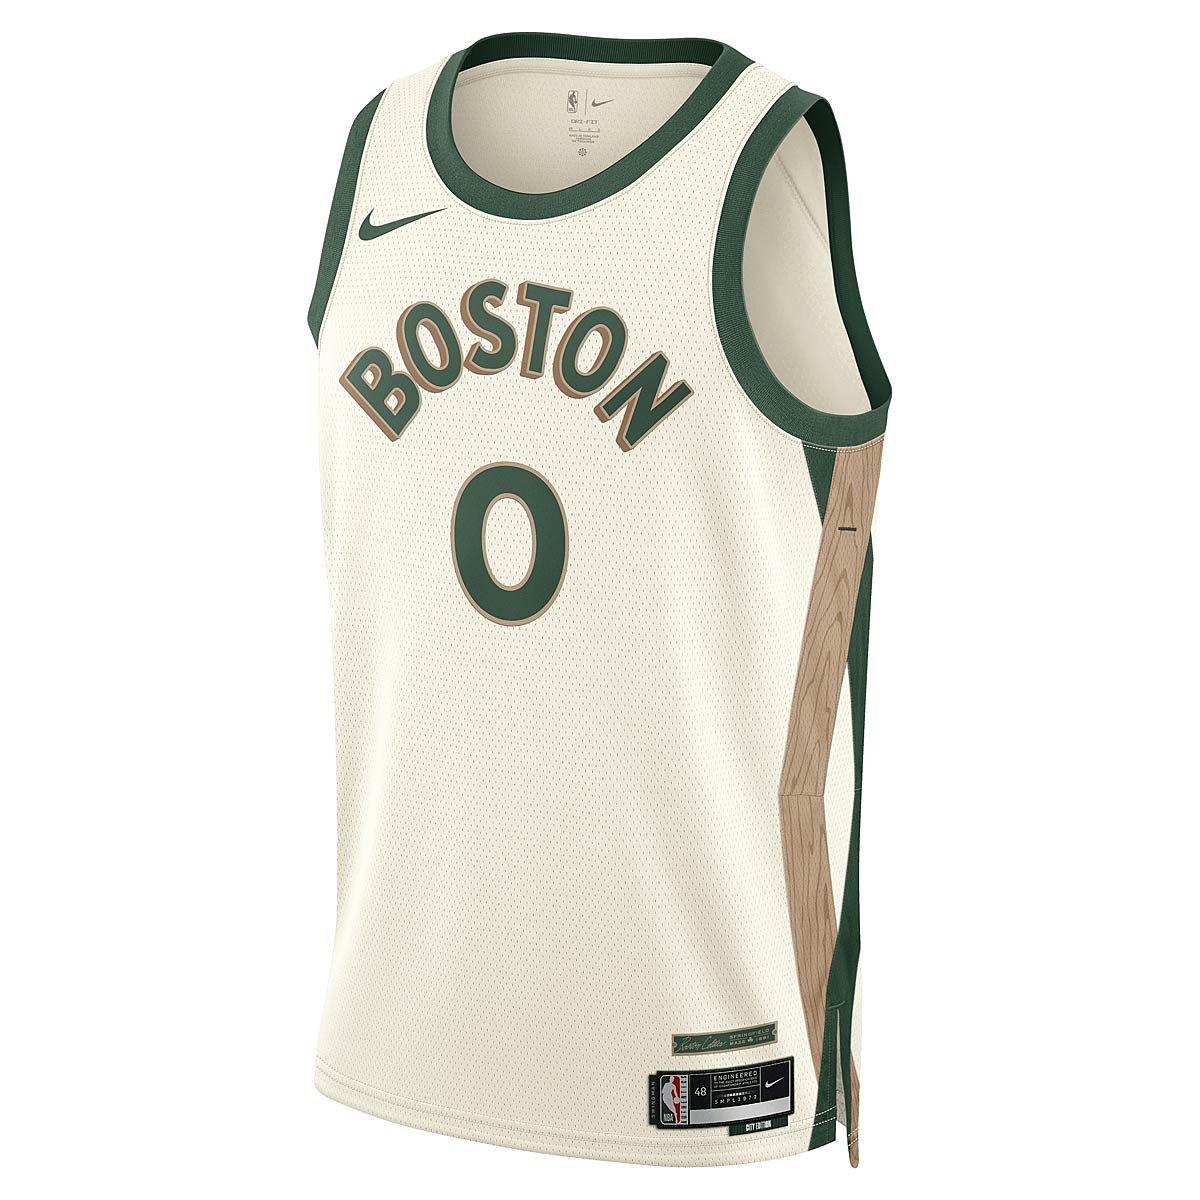 Nike NBA Boston Celtics Dri-fit City Edition Swingman Jersey Jayson Tatum, Sail/stealth-weiß M